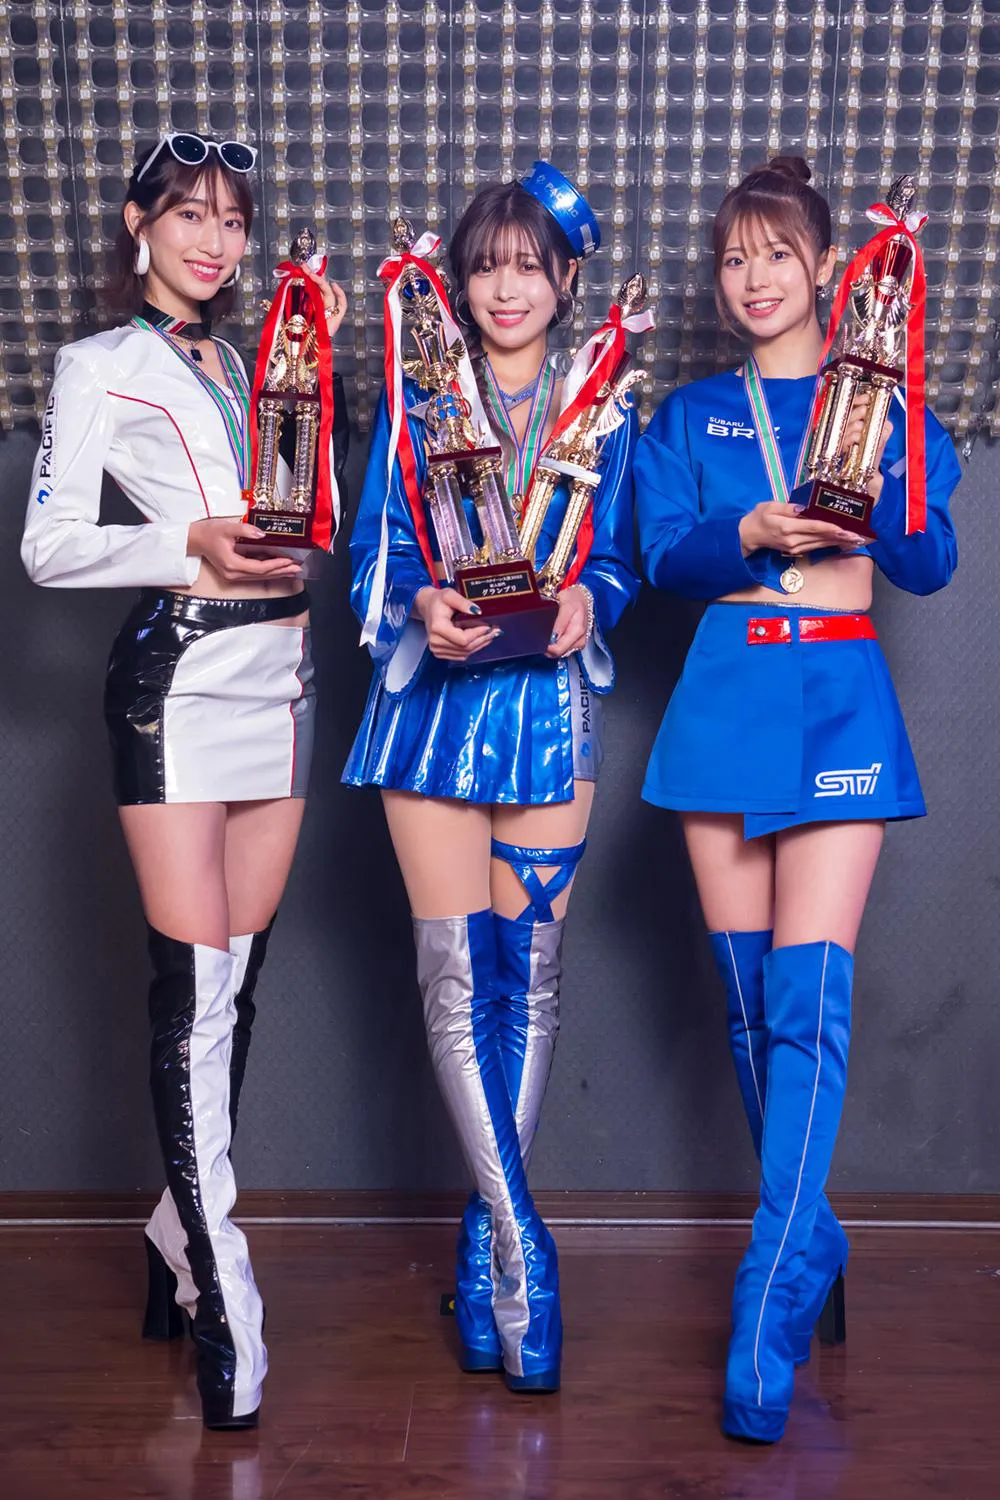 日本レースクイーン大賞2022新人部門を受賞した早川みゆき、七瀬なな、朝倉咲彩(写真左から)